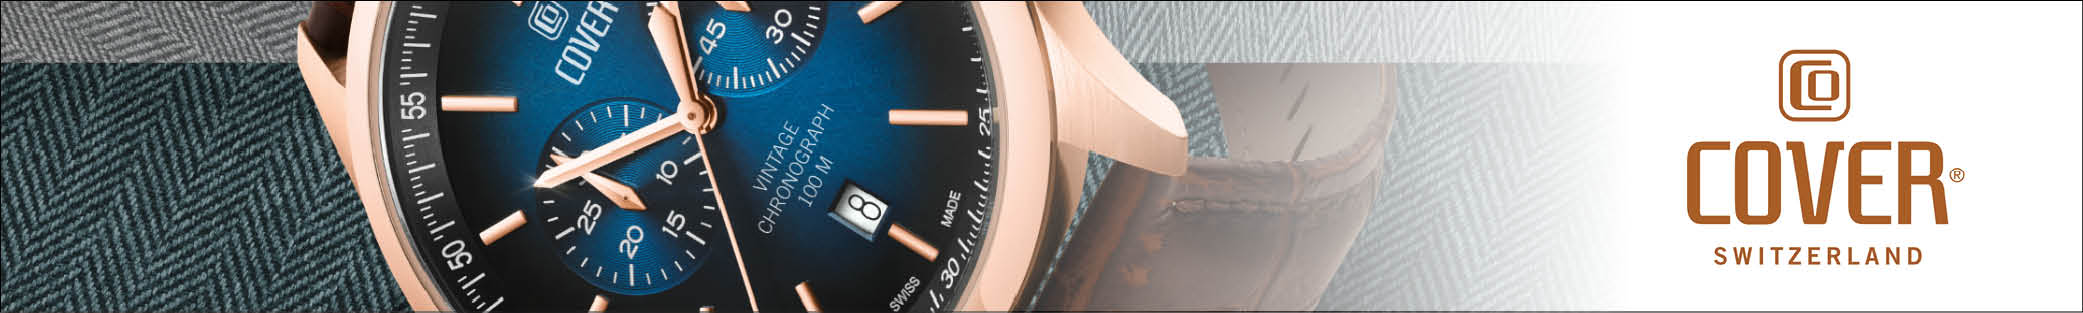 Flotte, sofistikerede Cover ure i højeste "Swiss made" kvalitet